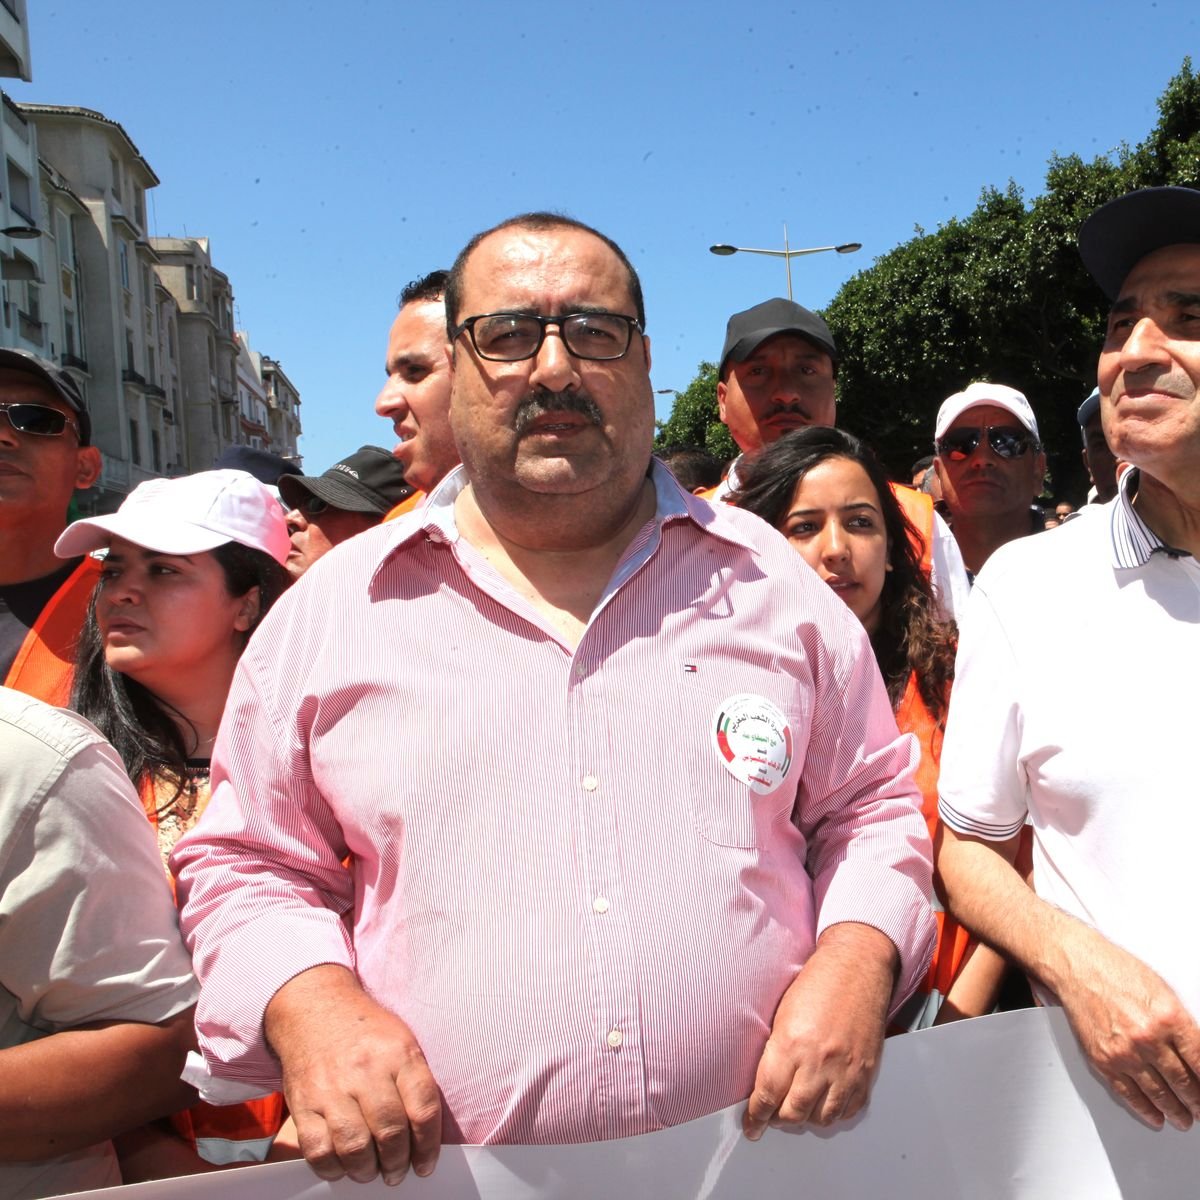 Driss Lachgar, premier secrétaire de l'USFP, et Habib Malki, membre du bureau politique, aux premiers rangs de la marche.
